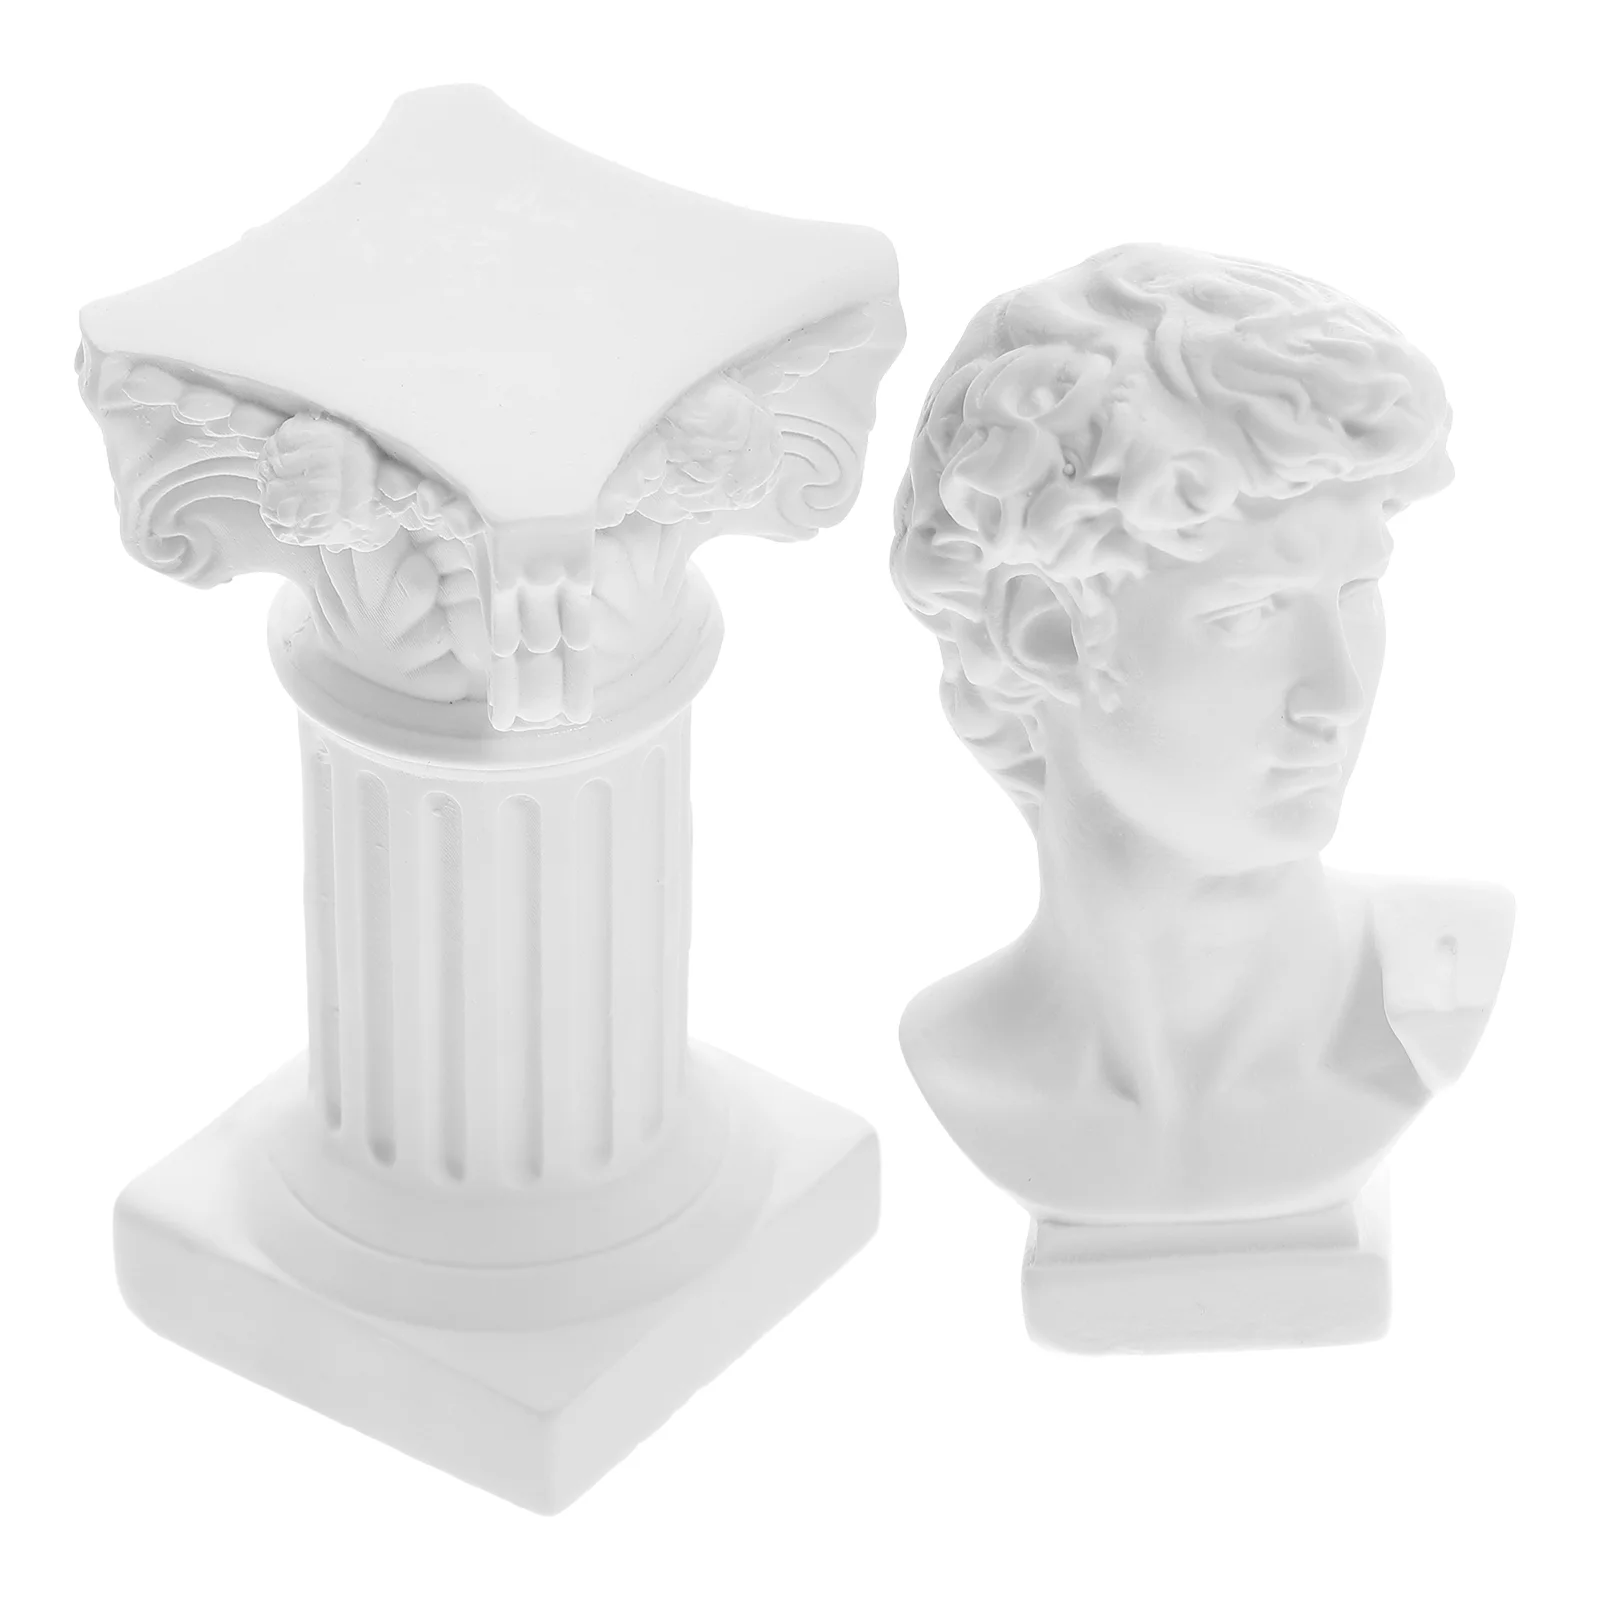 Статуэтки, украшения, статуэтка Давида из смолы, домашний декор, гипсовые мини-фигурки классического римского стиля 1